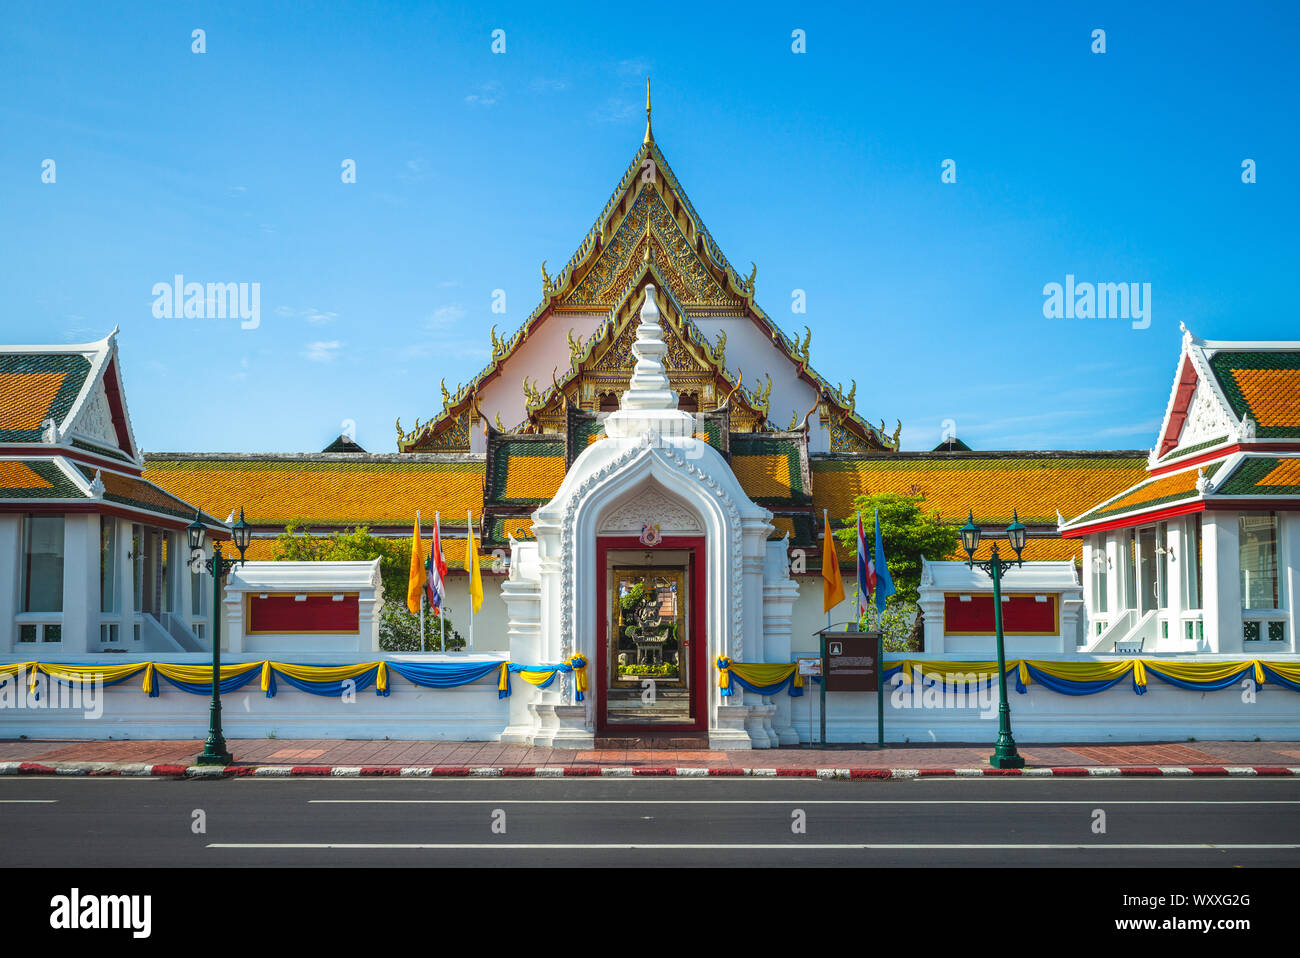 facade of wat suthat at bangkok, thailand Stock Photo